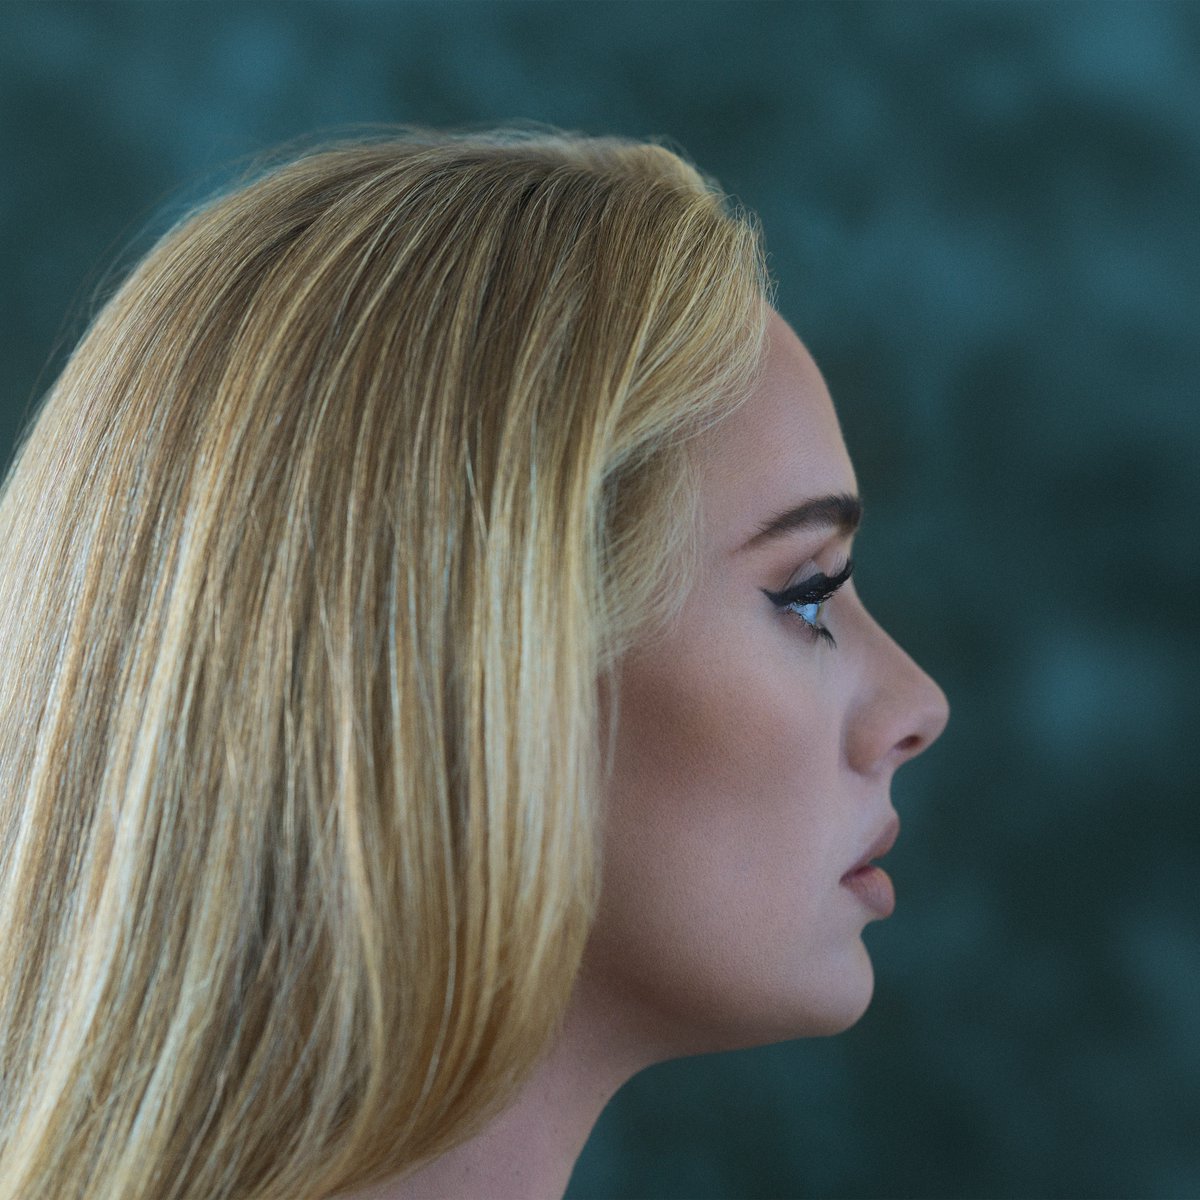 19 november verschijnt het nieuwe vierde album van Adele